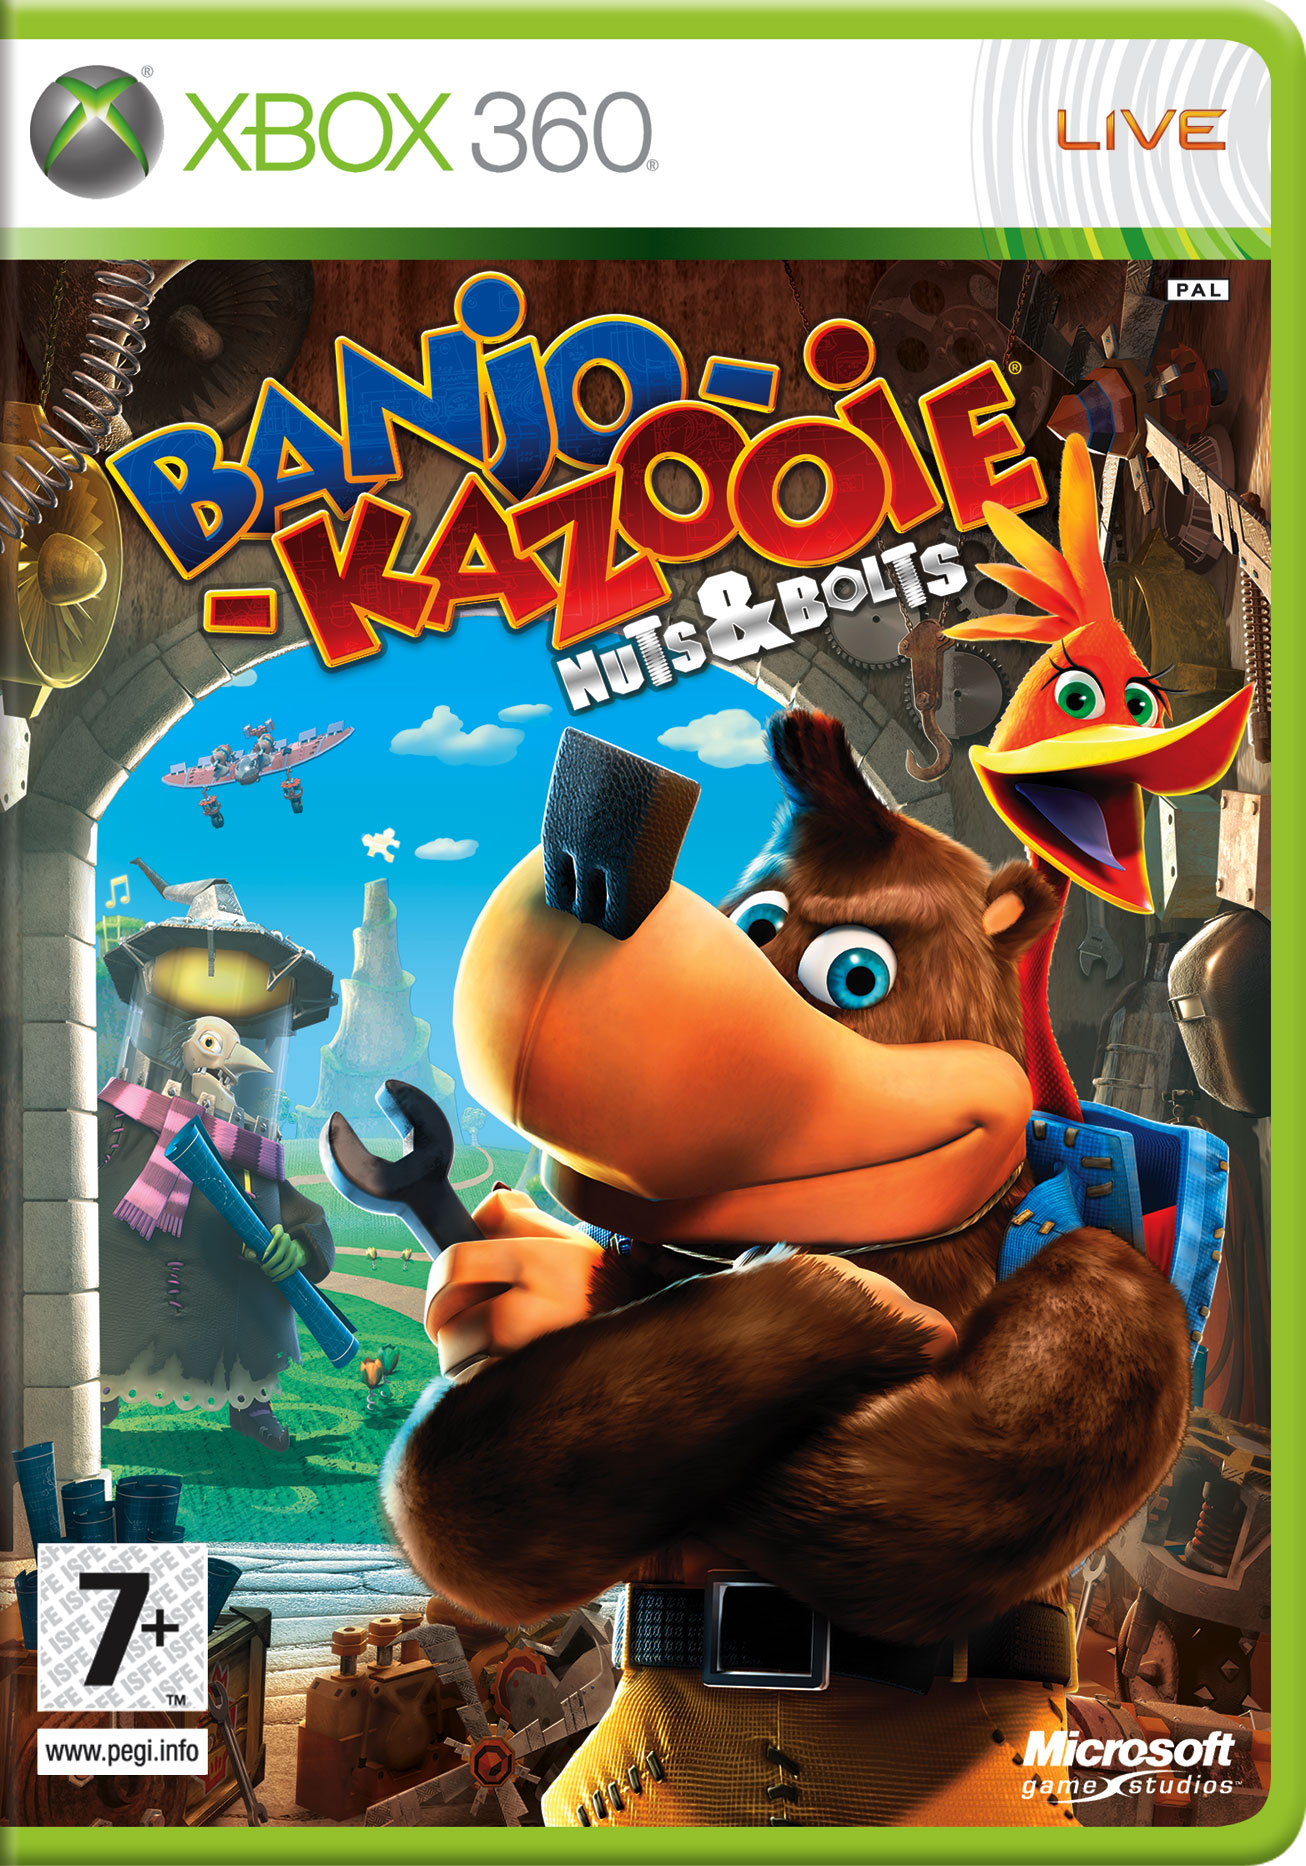 Portada de Banjo-Kazooie en Xbox 360 ~ PlanetadeJuego